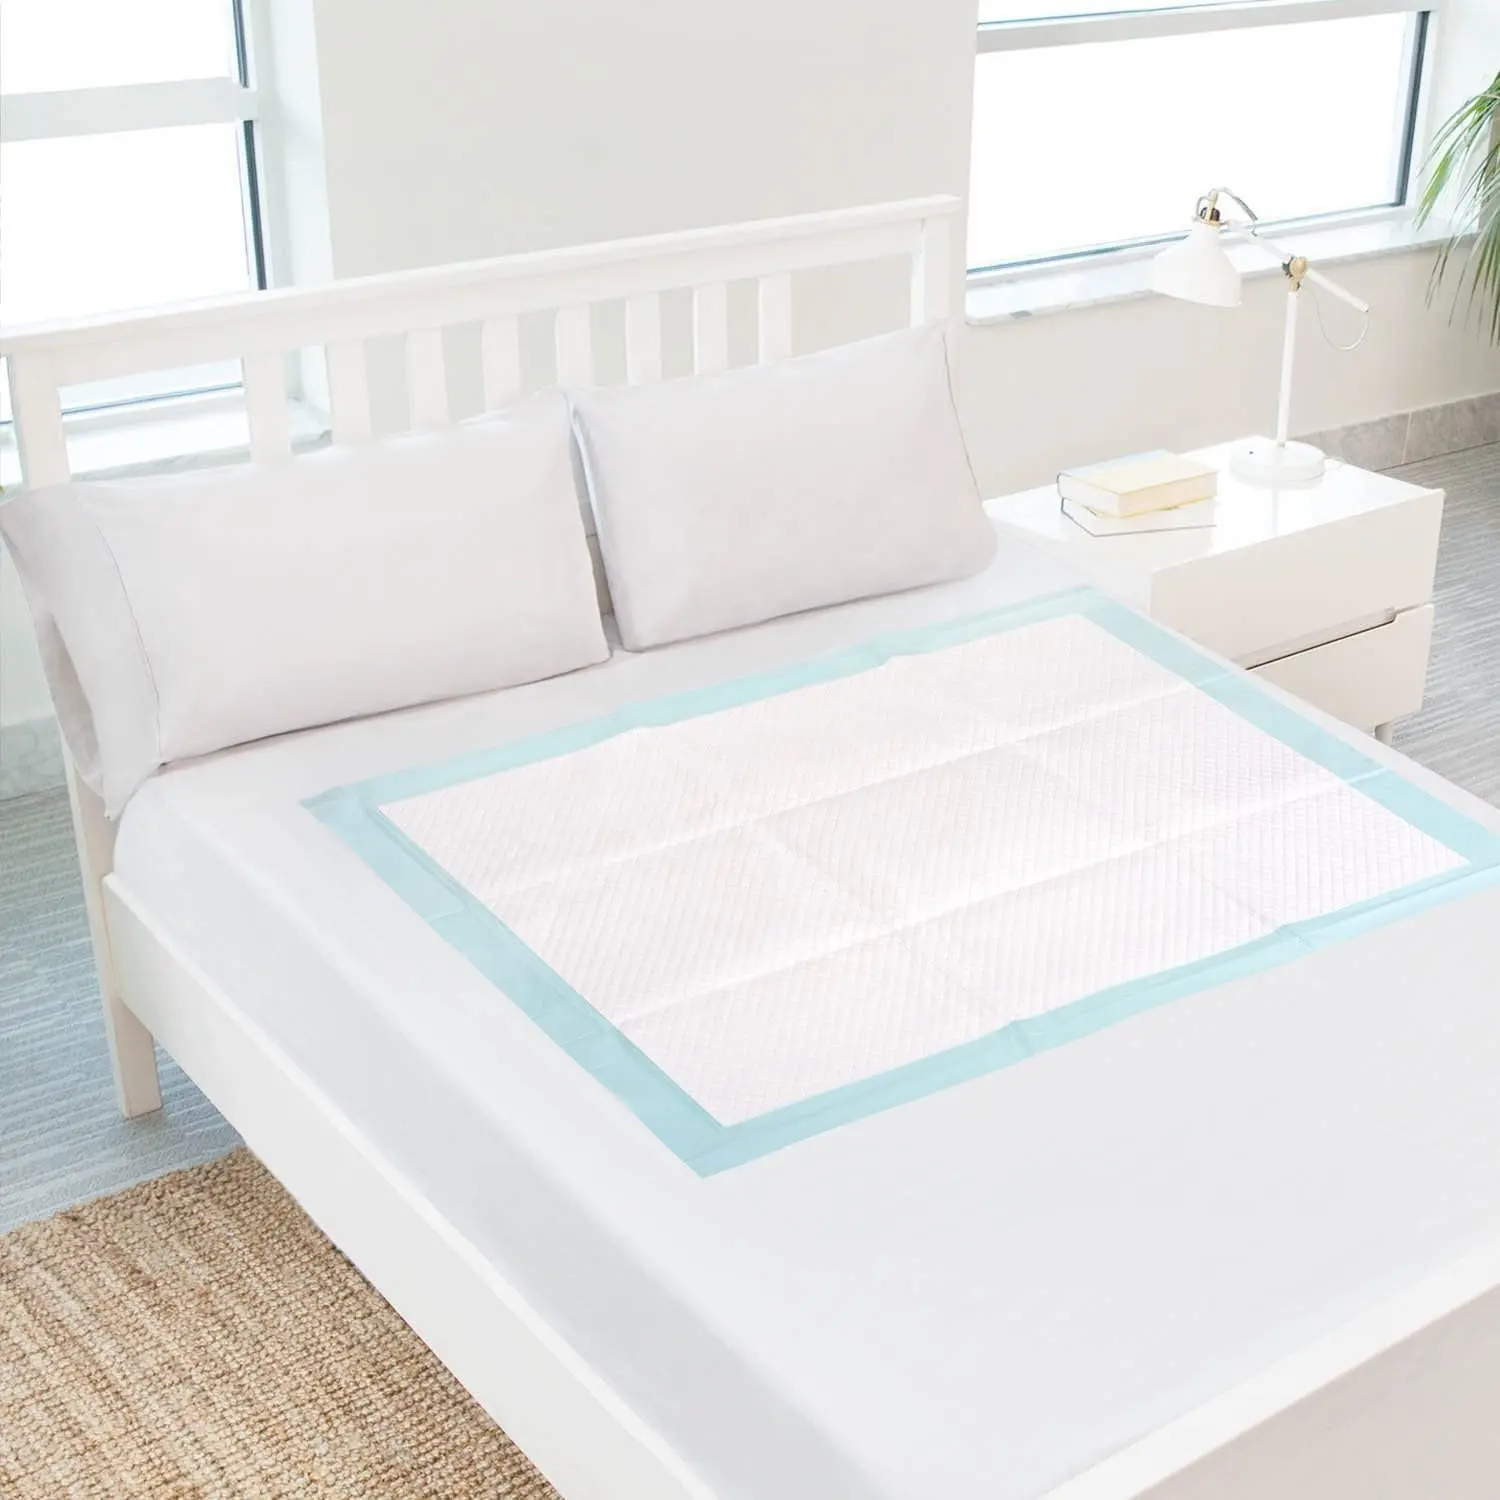 Almohadillas desechables ultra absorbentes de alta calidad para cama de incontinencia para adultos